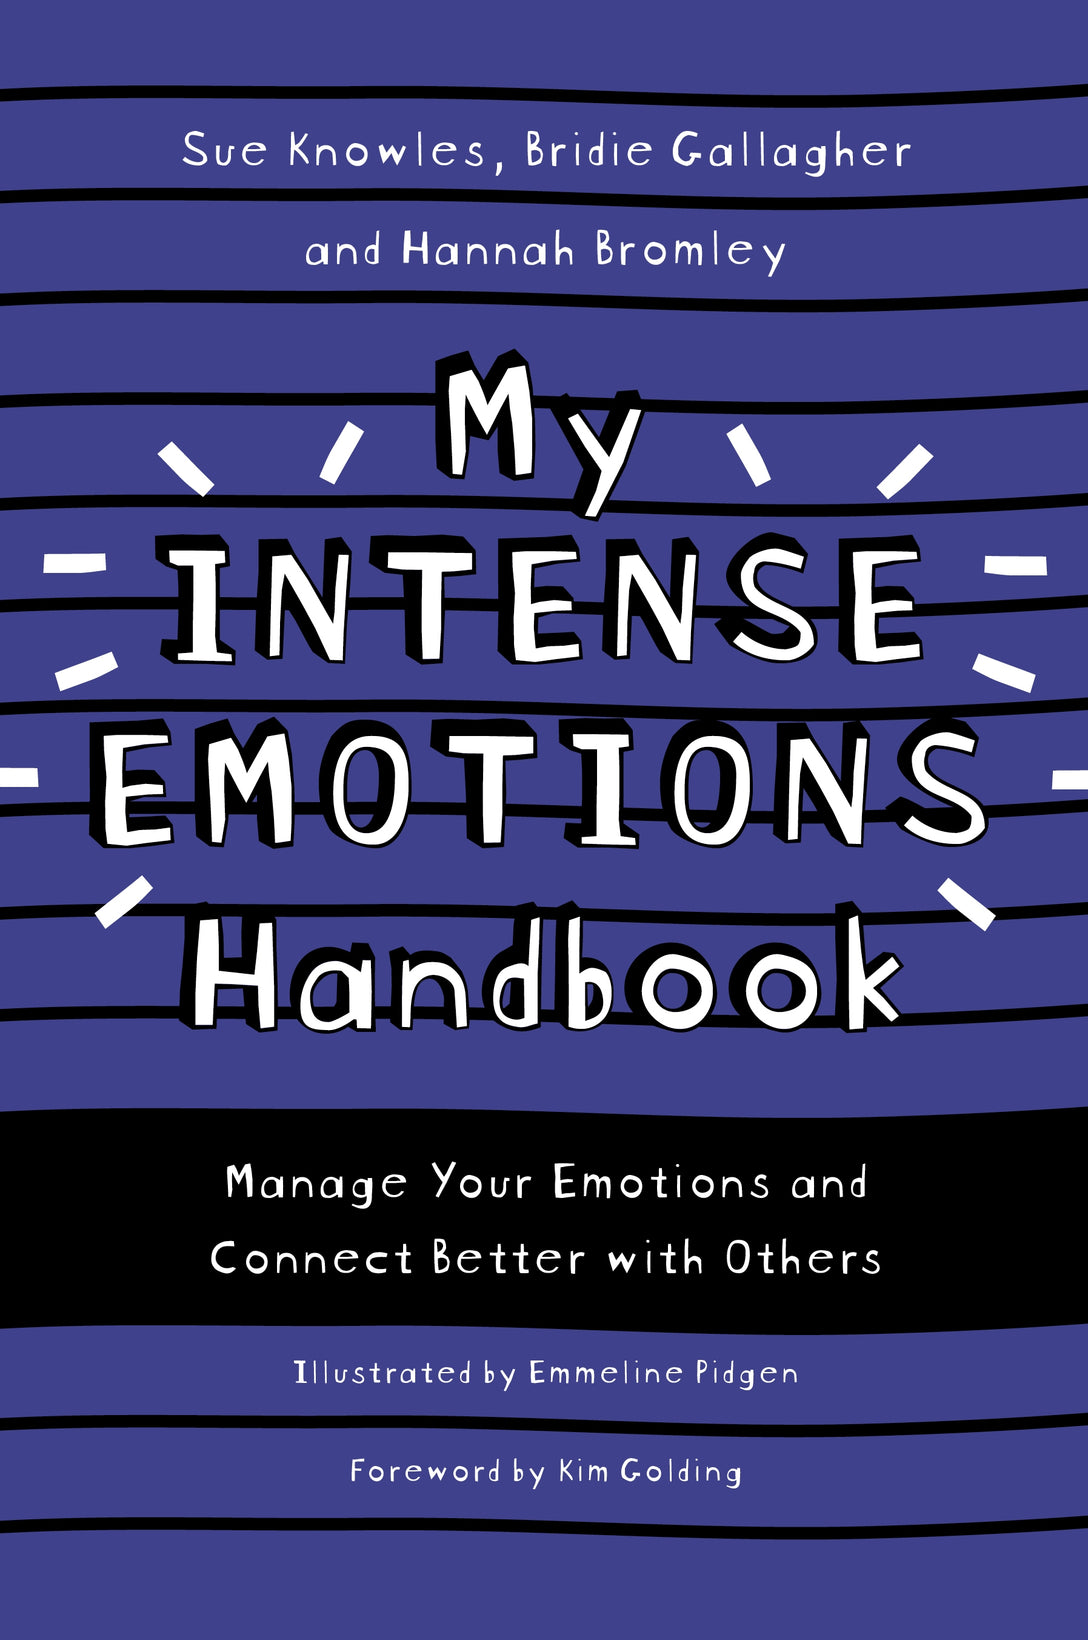 My Intense Emotions Handbook by Sue Knowles, Bridie Gallagher, Hannah Bromley, Emmeline Pidgen, Kim S. Golding